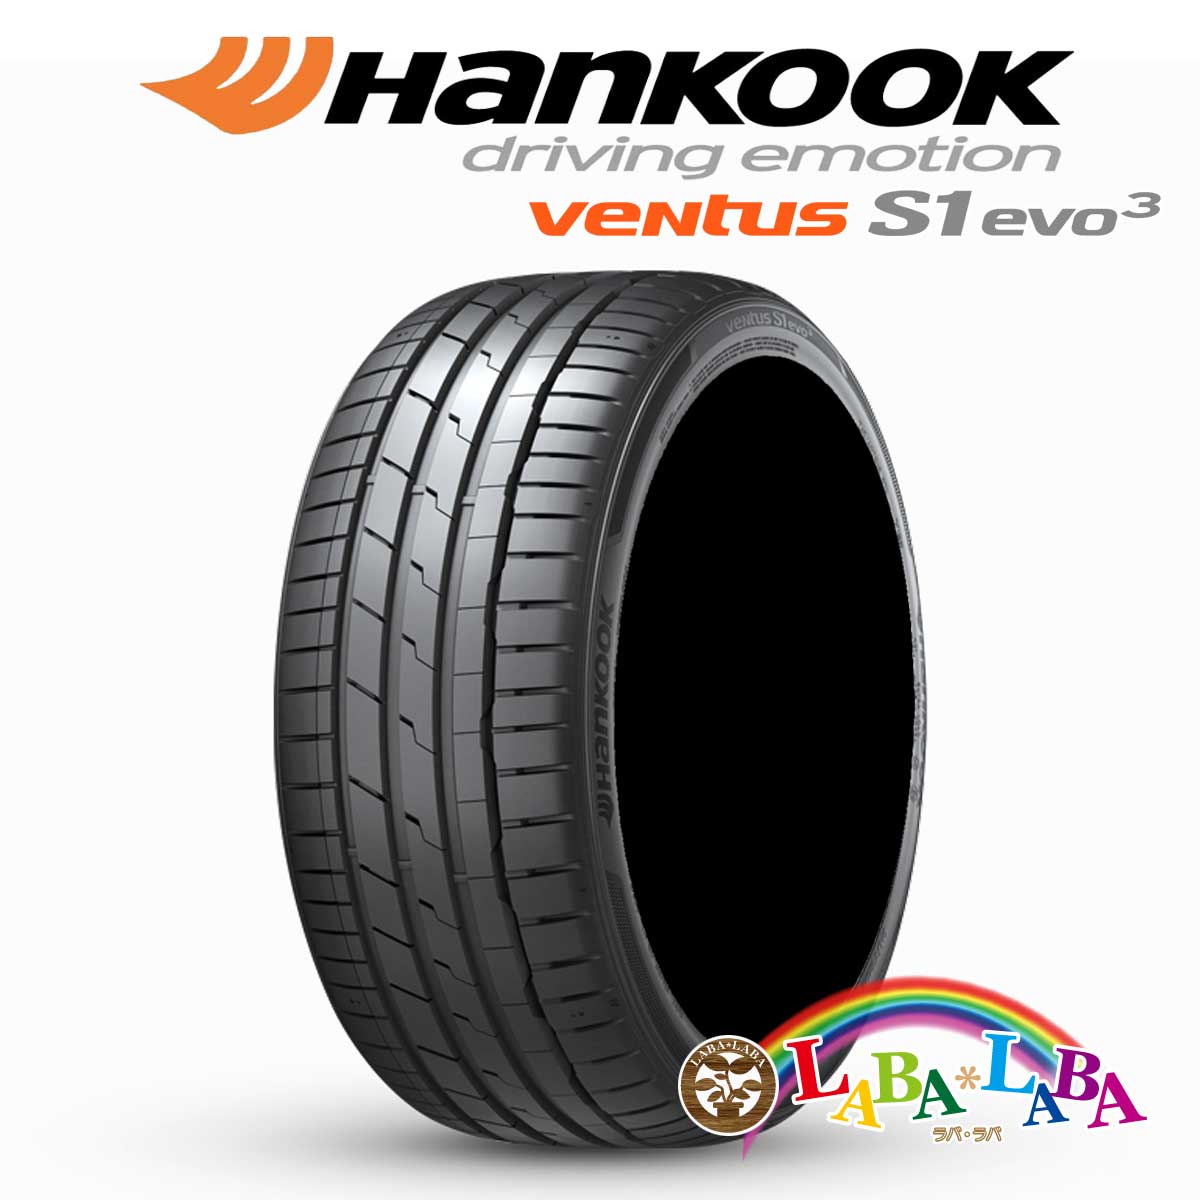 HANKOOK ハンコック VENTUS S1 evo3 ベンタス K127 245/30R20 90Y XL サマータイヤ 4本セット